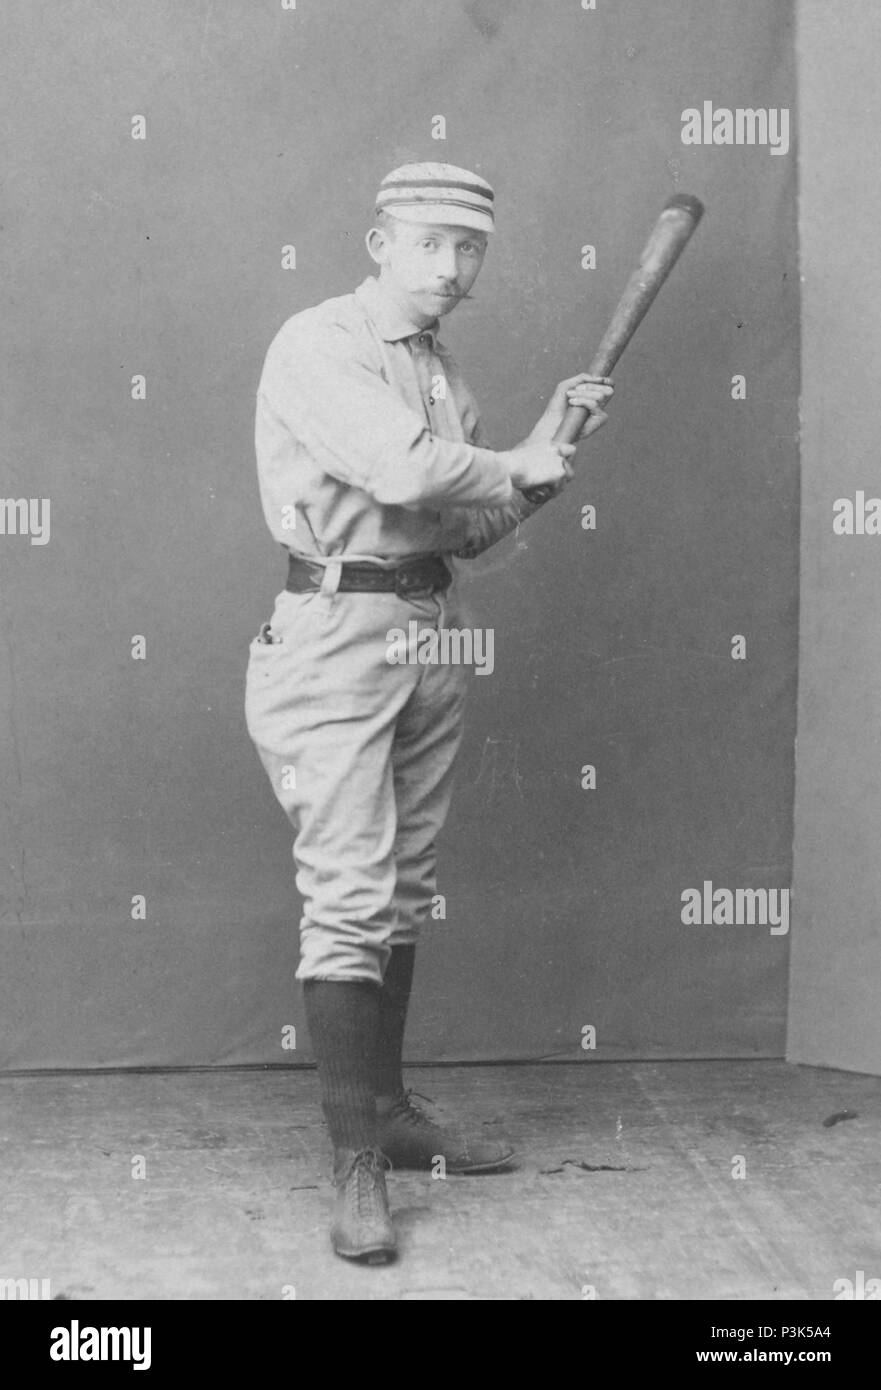 Arthur Albert Irwin (1858-1921), kanadische Amerikanische shortstop und Manager in der Major League Baseball (MLB) während des späten neunzehnten Jahrhunderts Stockfoto